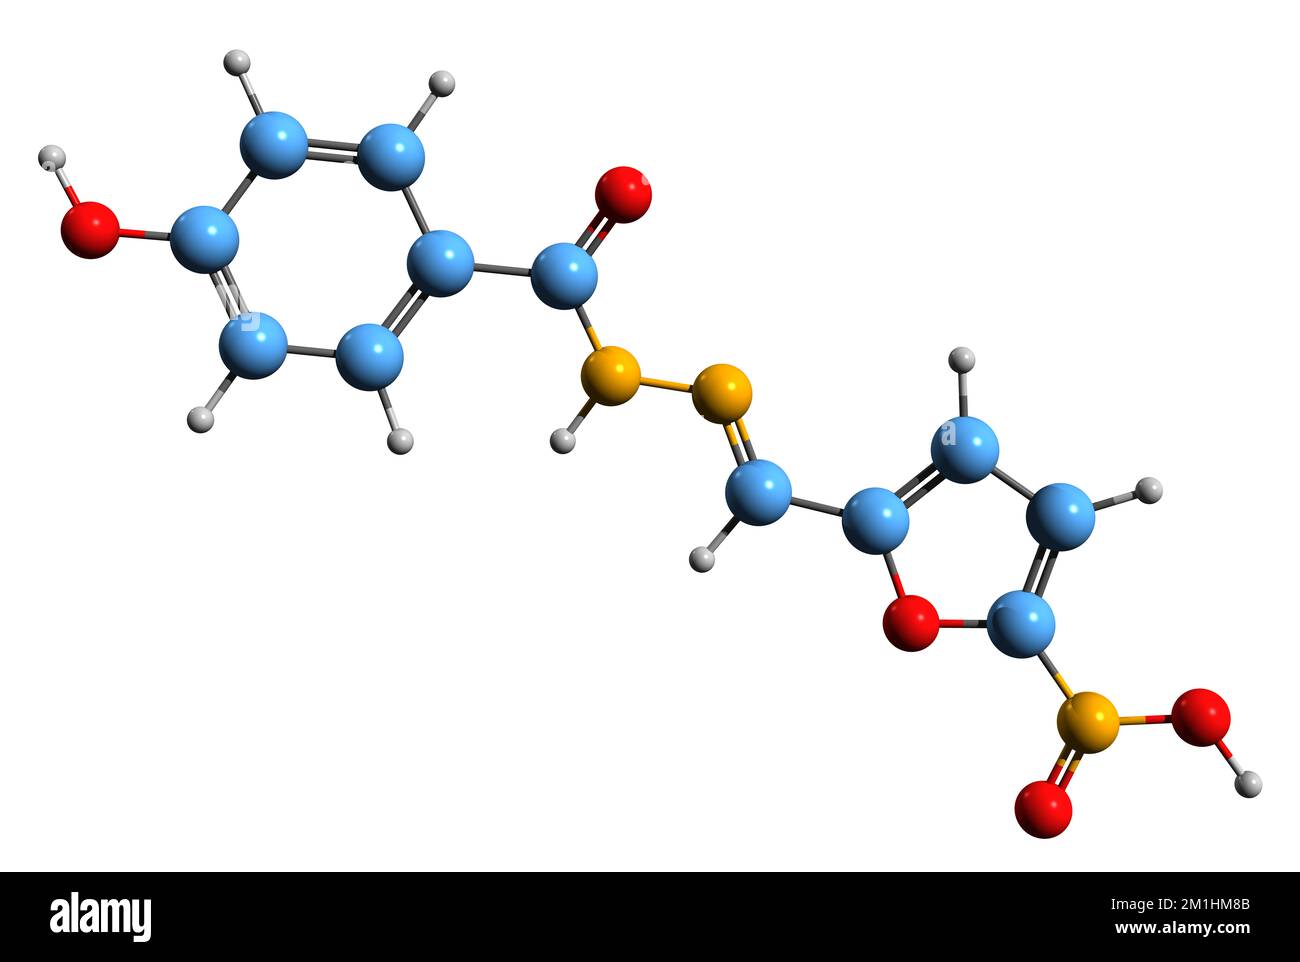 3D-Bild der Nifuroxazid-Skelettformel - molekularchemische Struktur des auf weißem Hintergrund isolierten Nitrofuran-Antibiotikums Stockfoto